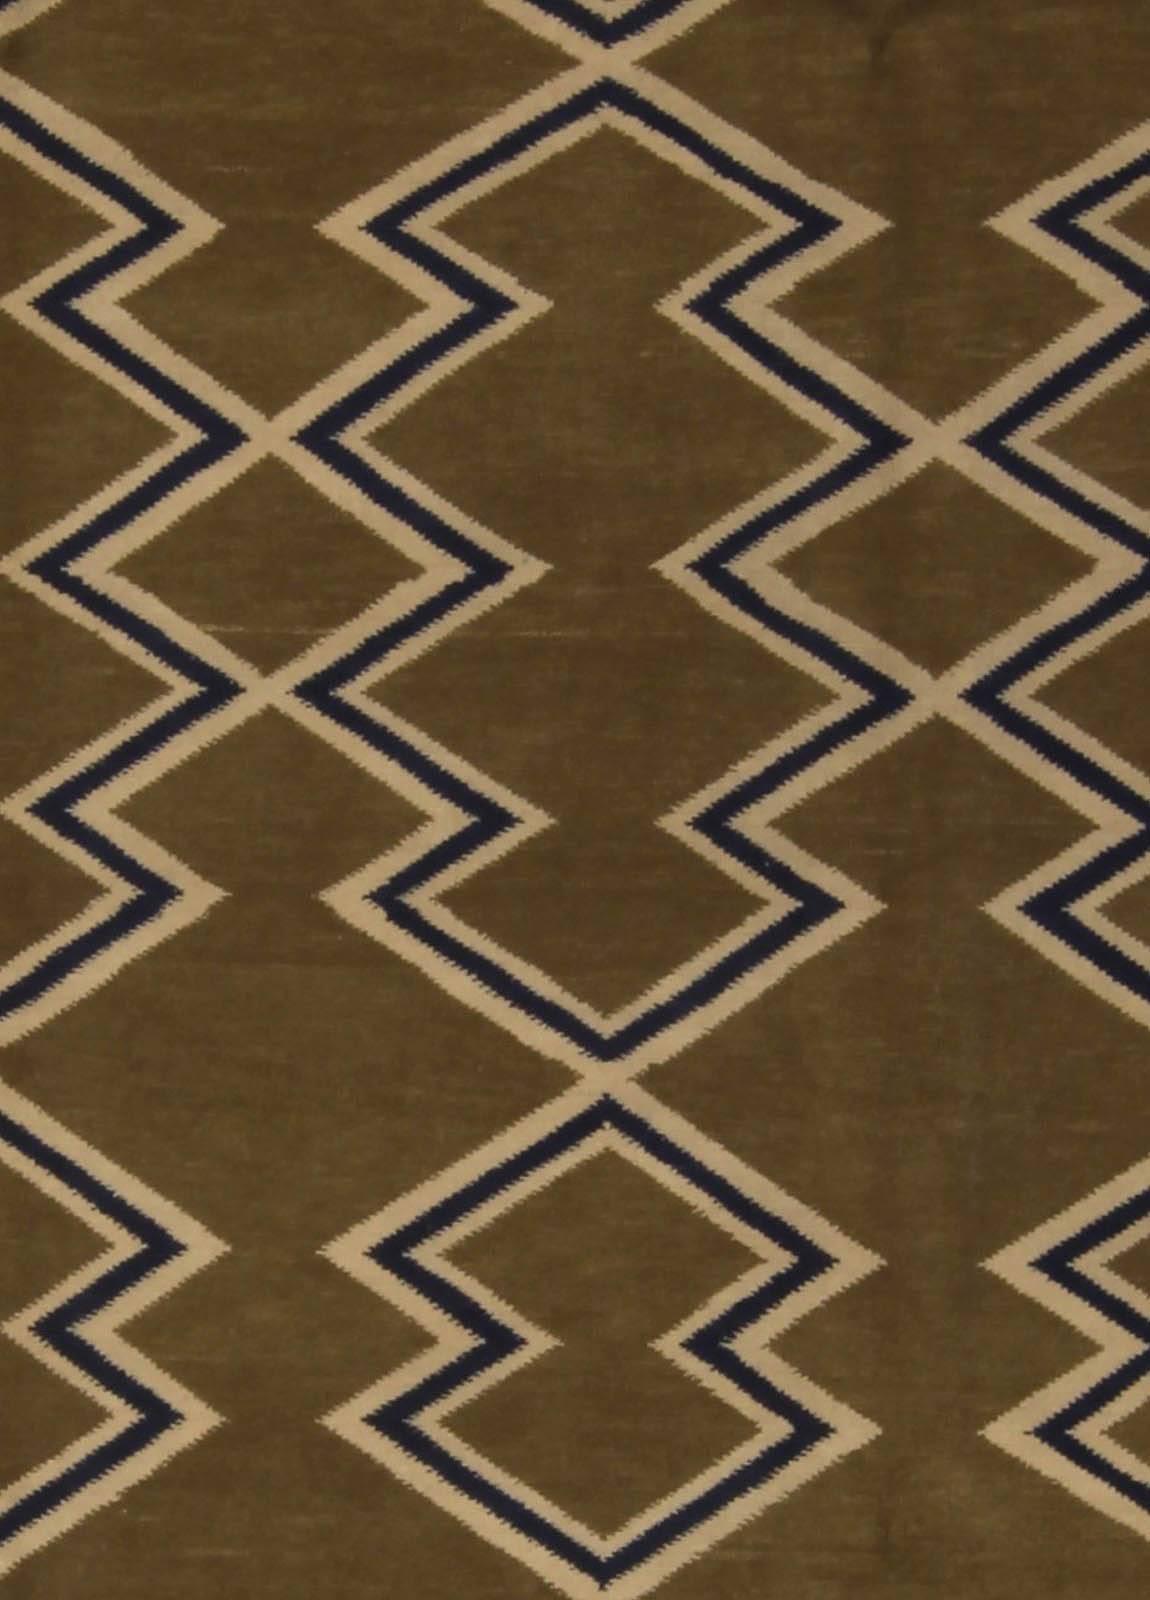 Tapis géométrique aztèque moderne fait main par Doris Leslie Blau.
Taille : 274 x 365 cm (9'0